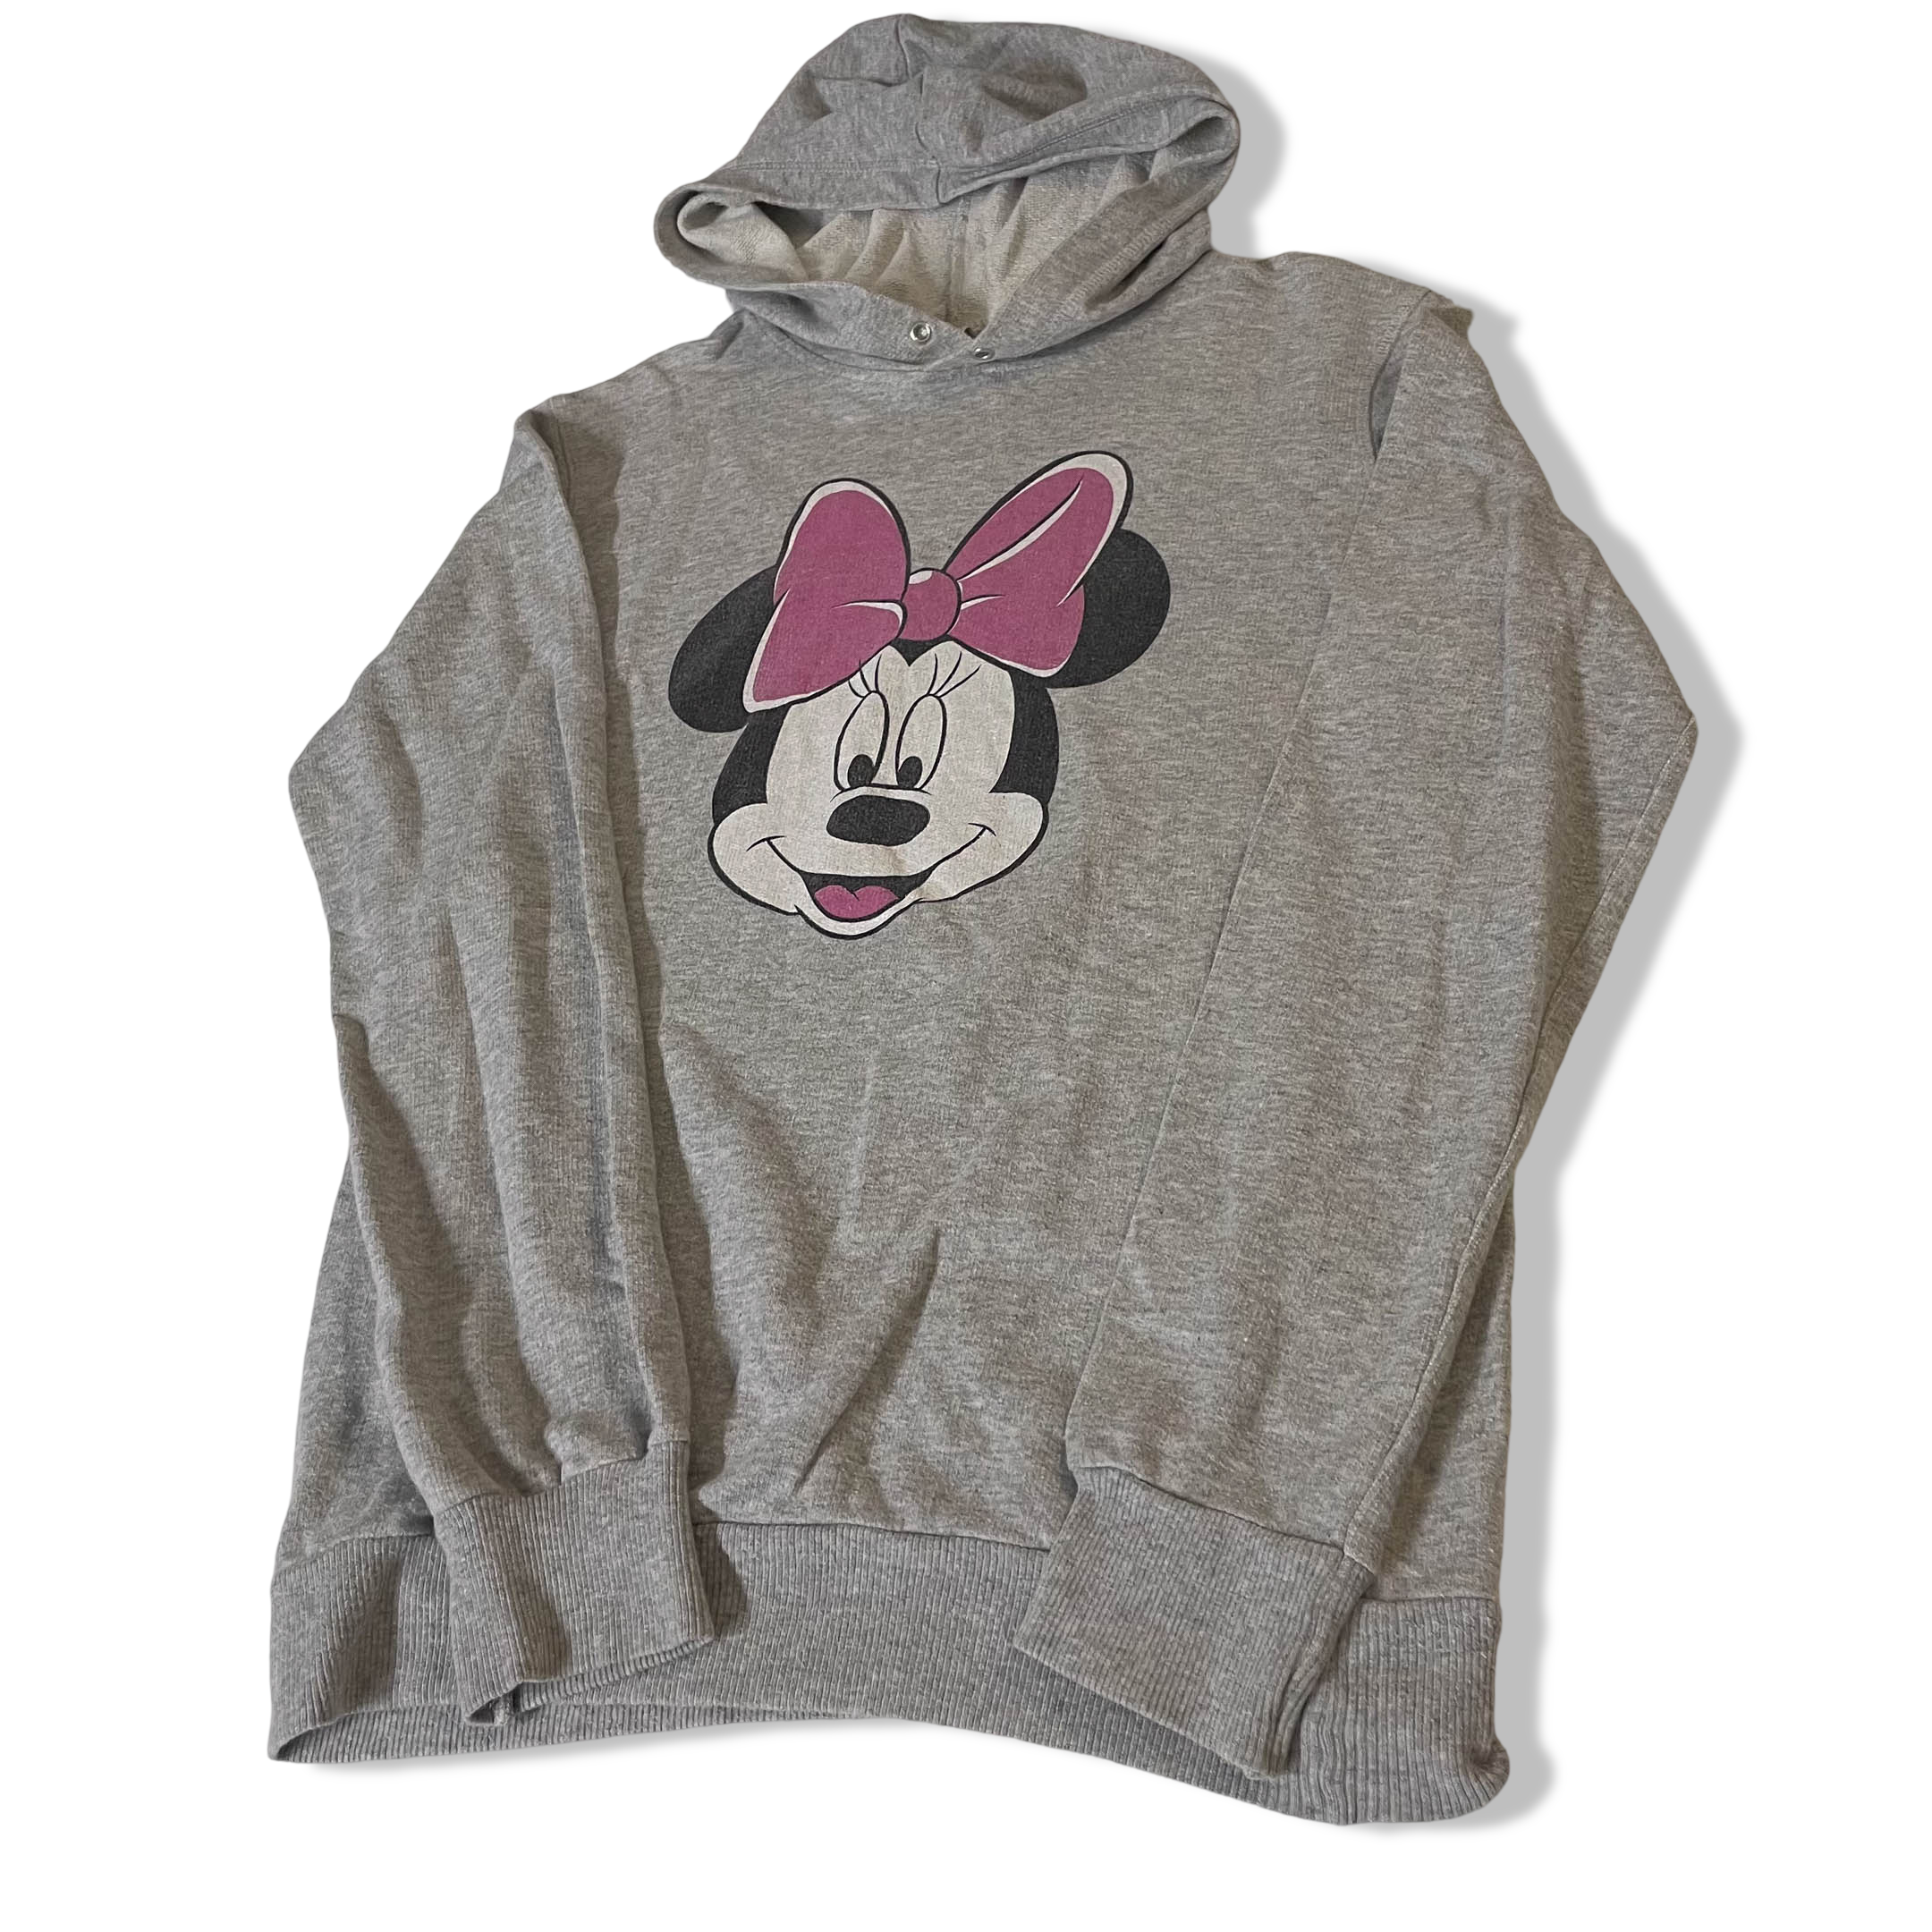 Vintage Disney Mickey Mouse grey large hoodie| L25 W20| SKU 3778